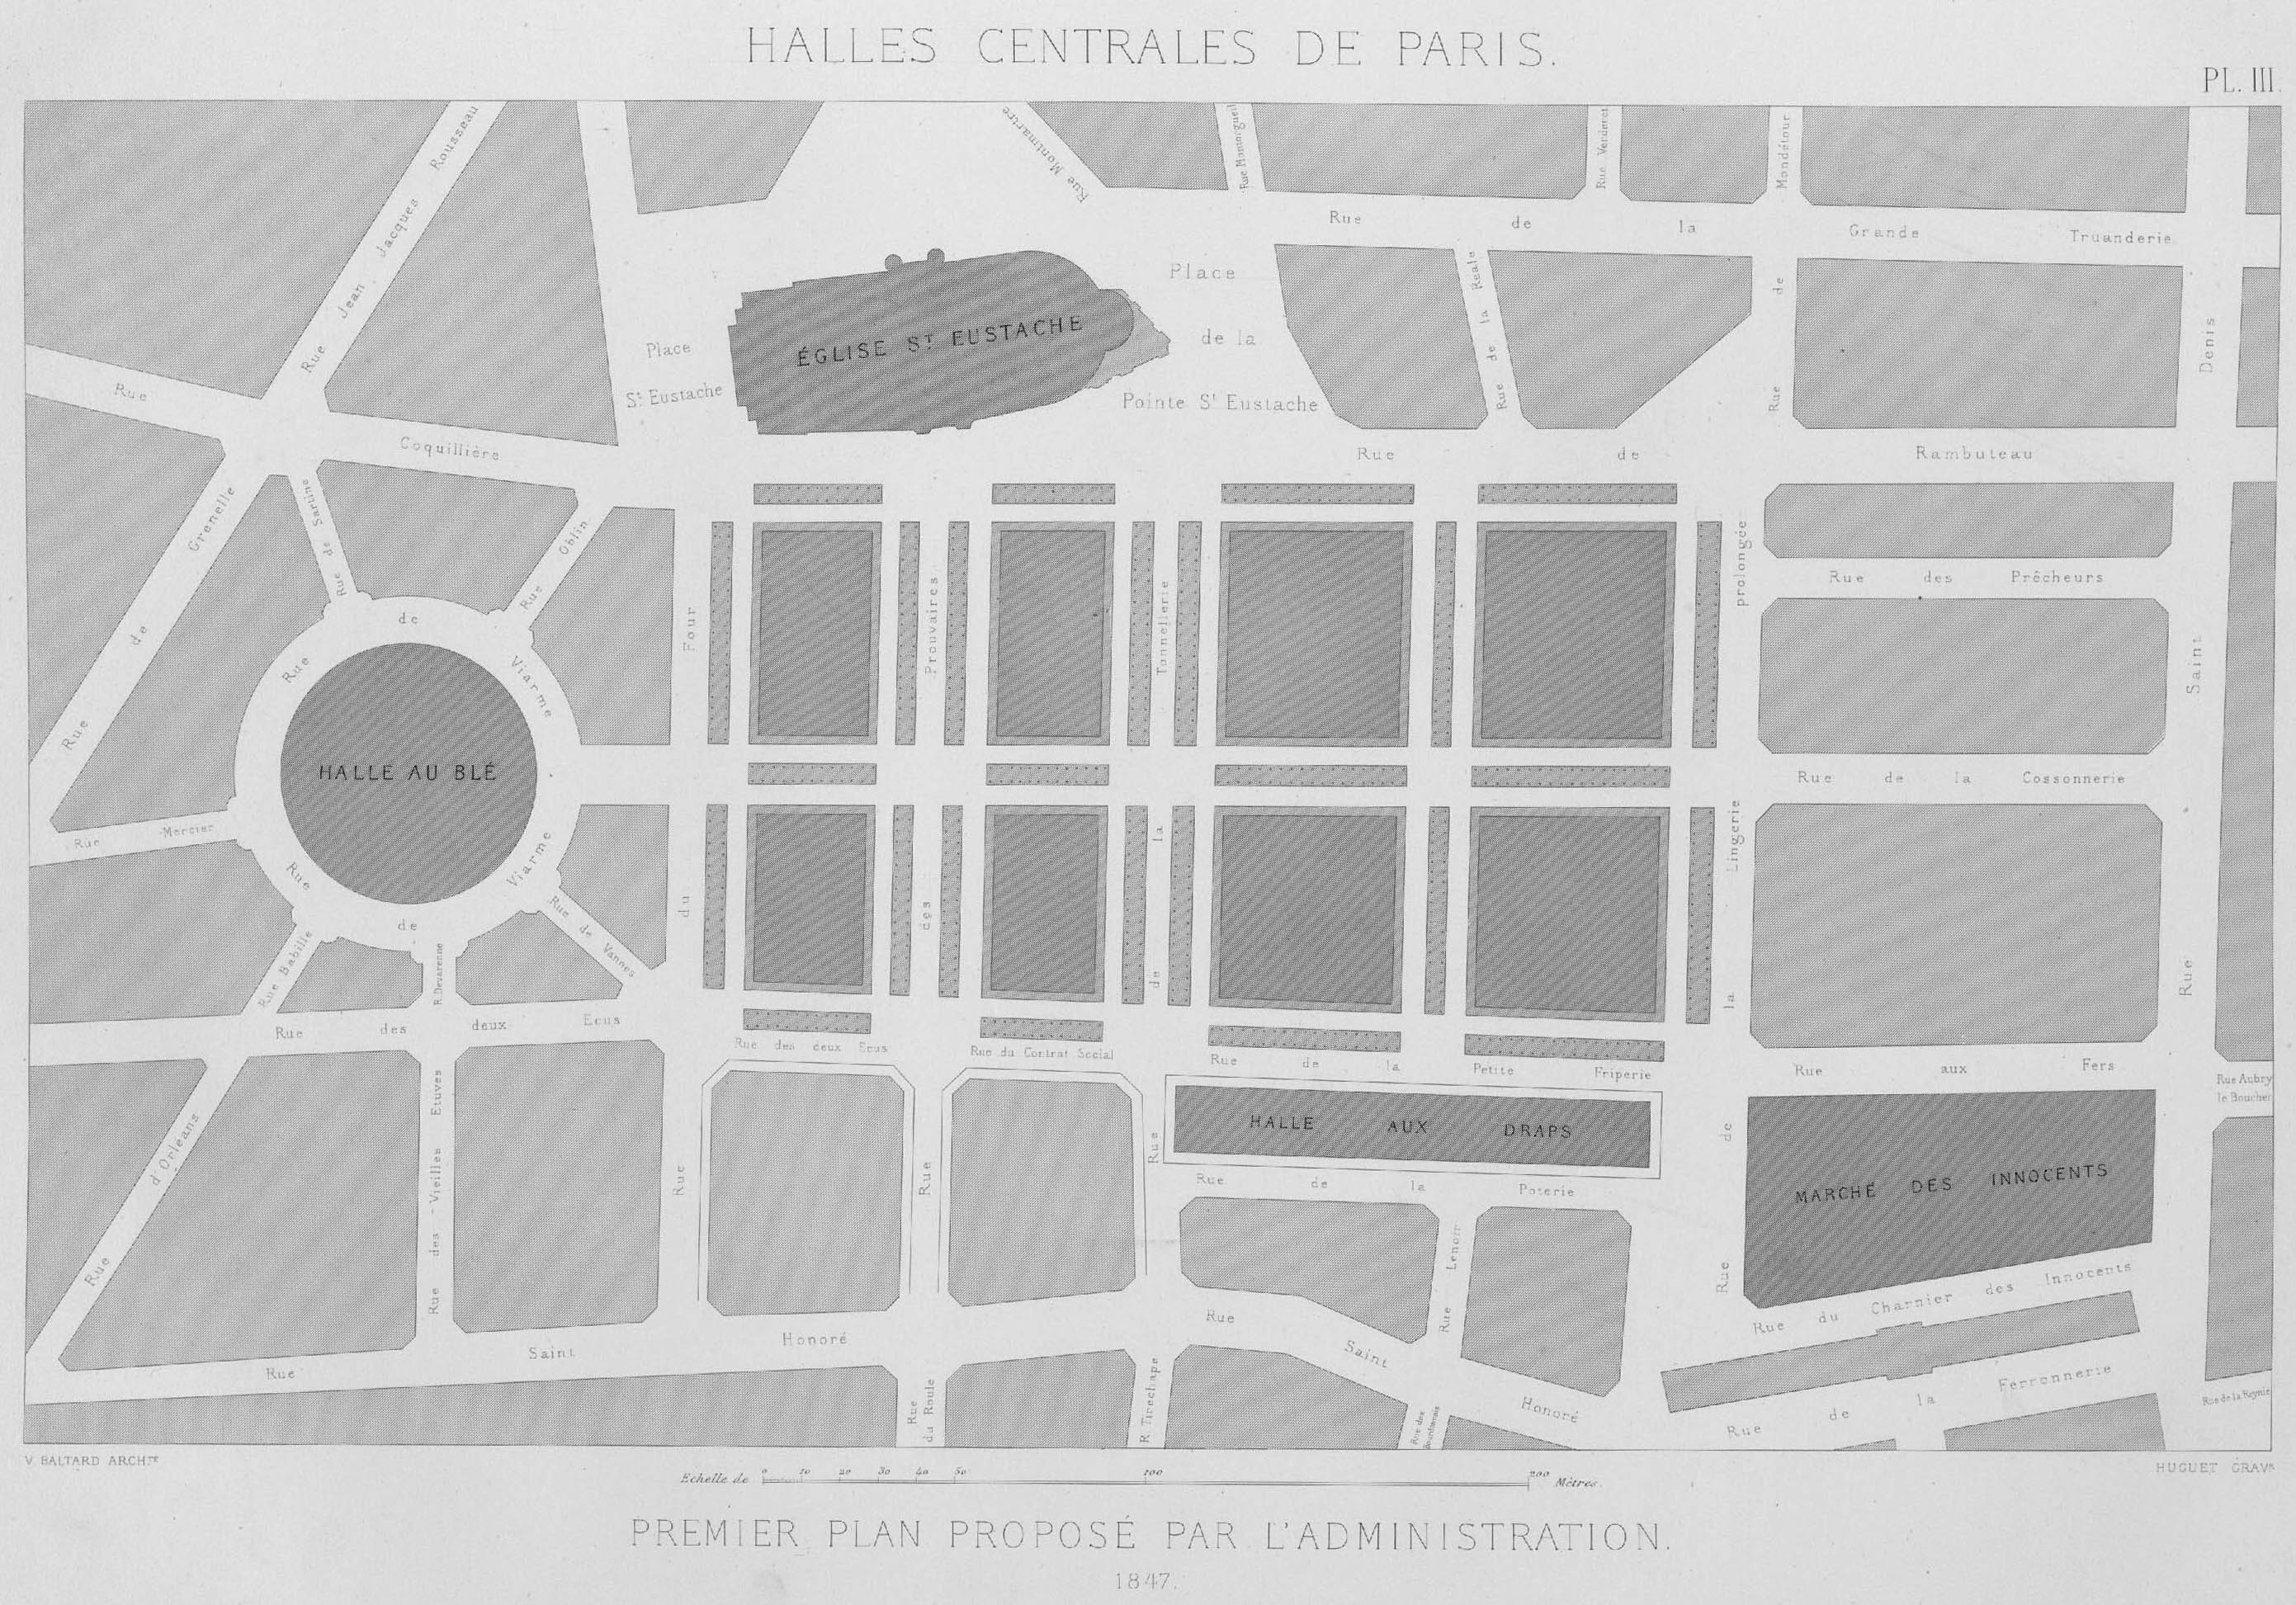 Premier plan proposé par l’administration, 1847 © Cité de l'architecture & du patrimoine/Musée des Monuments français